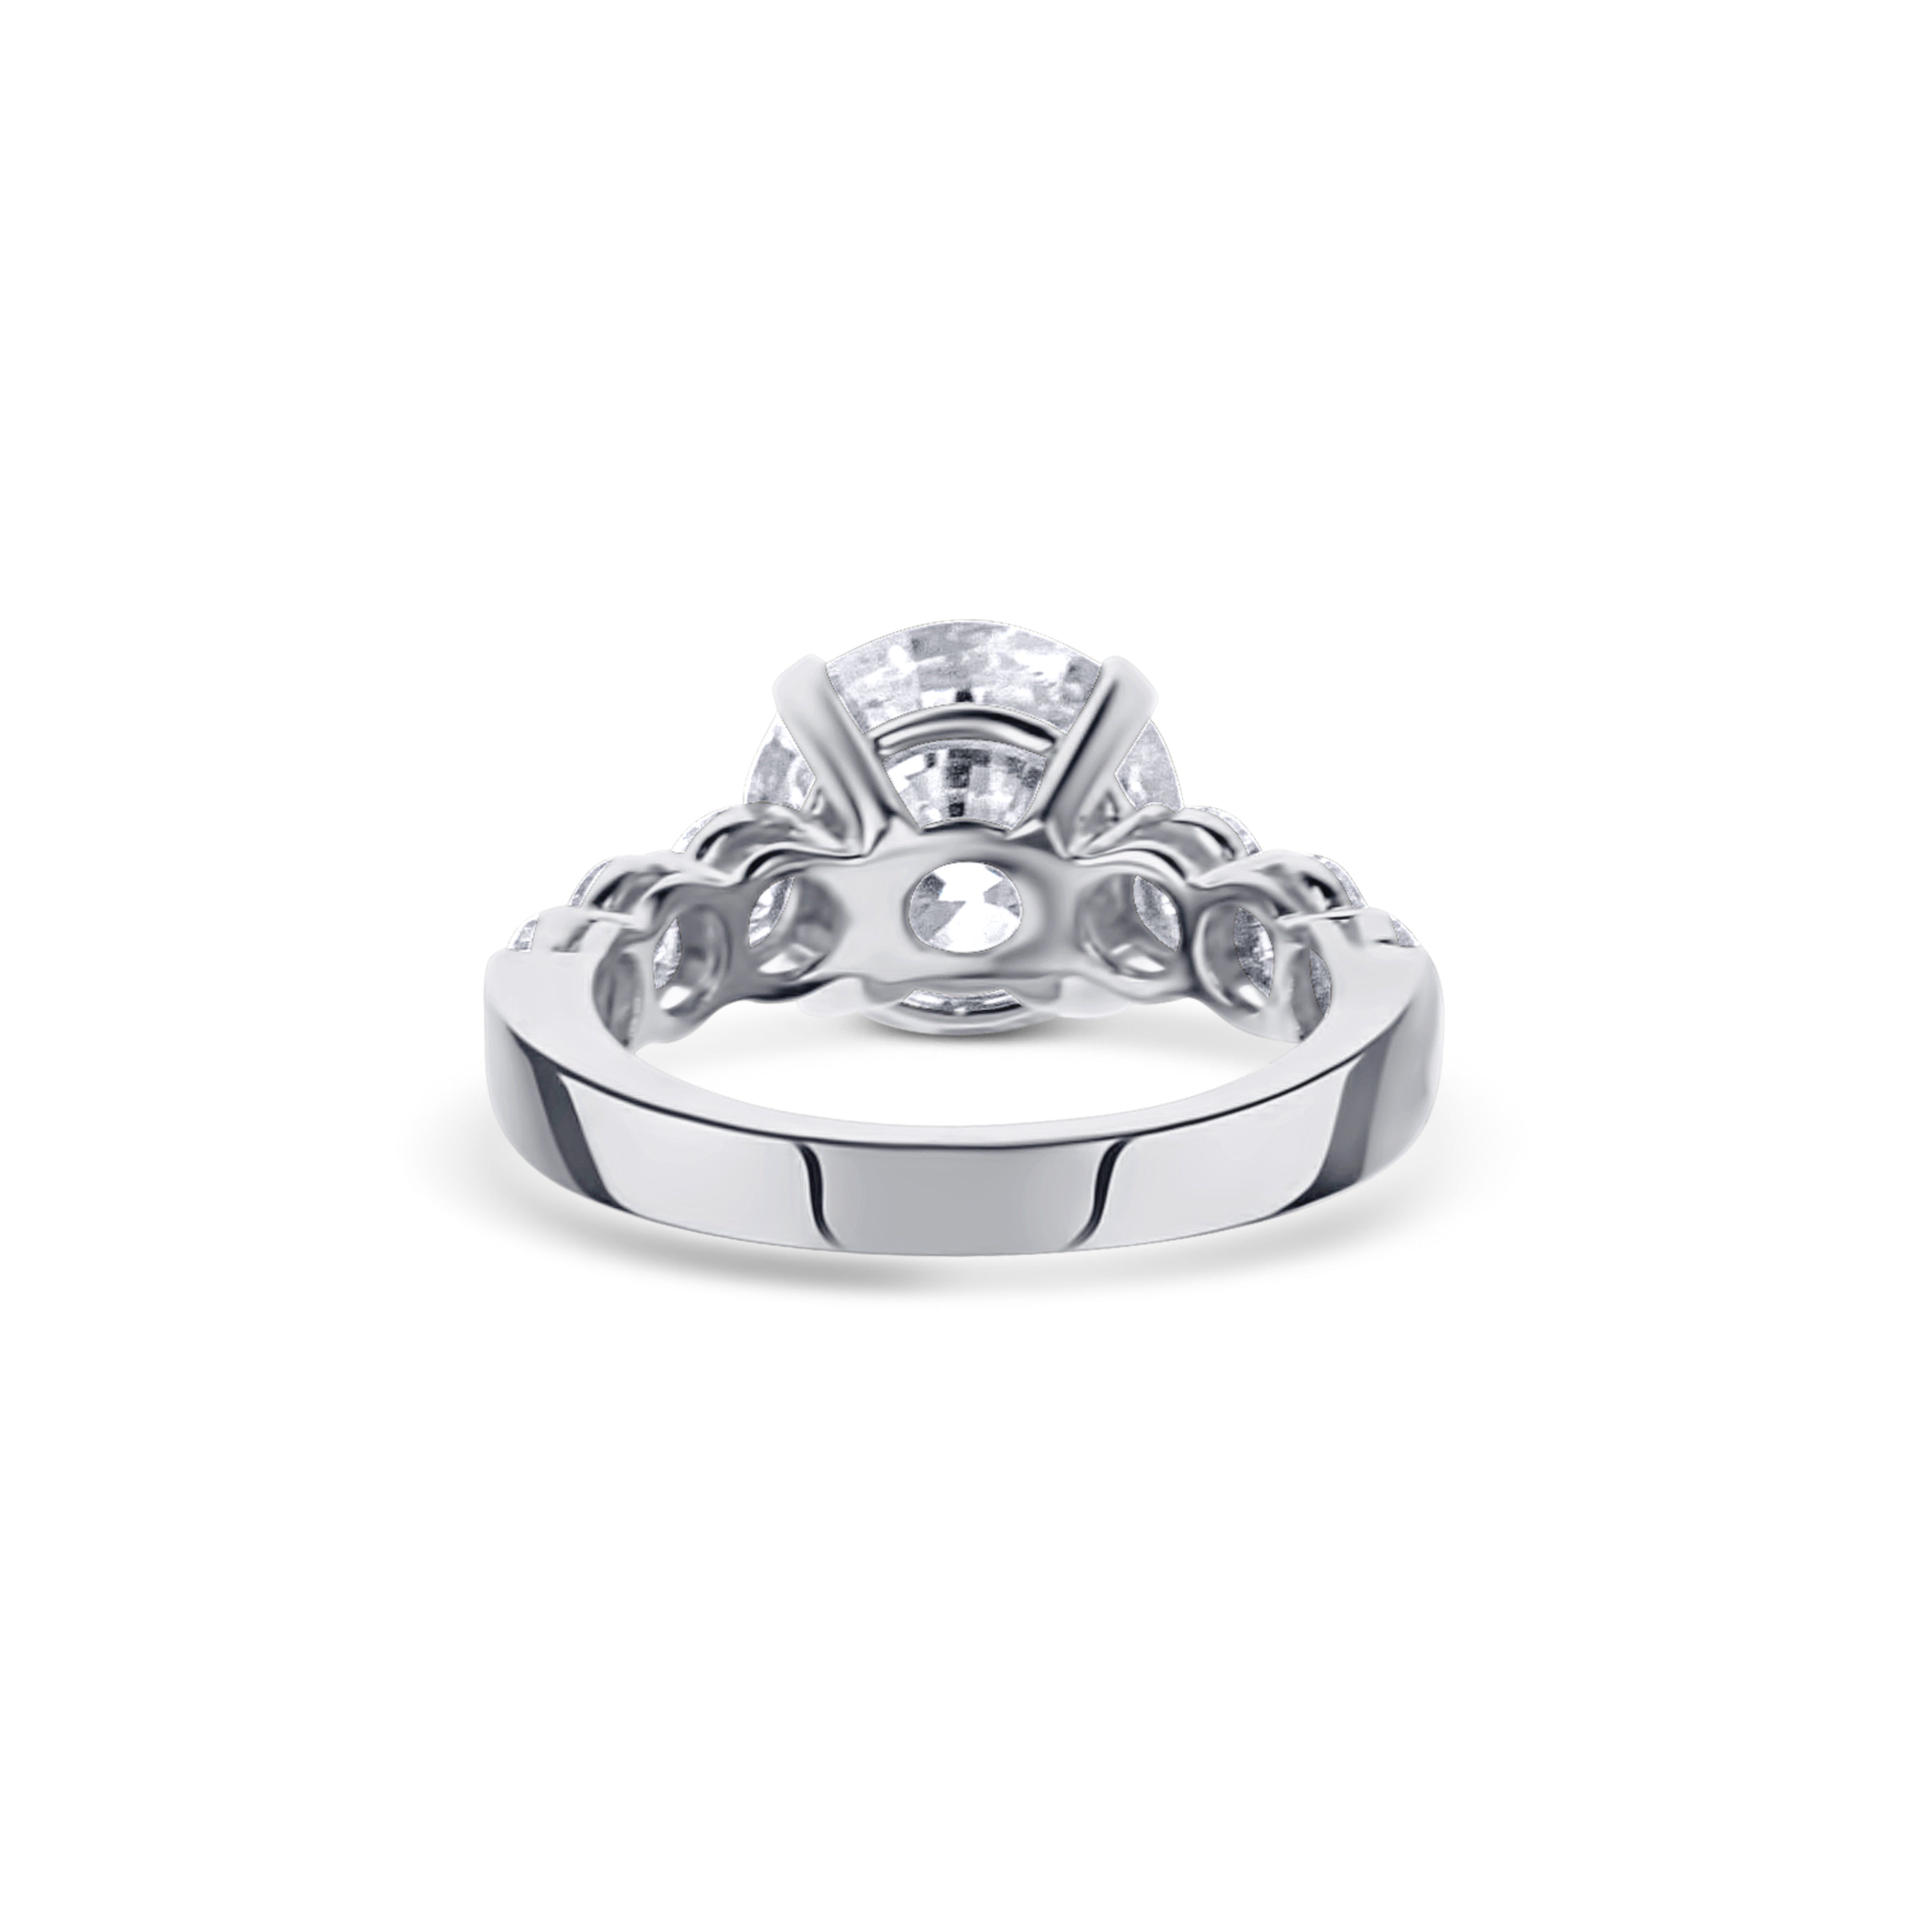 18K White Gold Stunning Round Diamond Engagement Ring